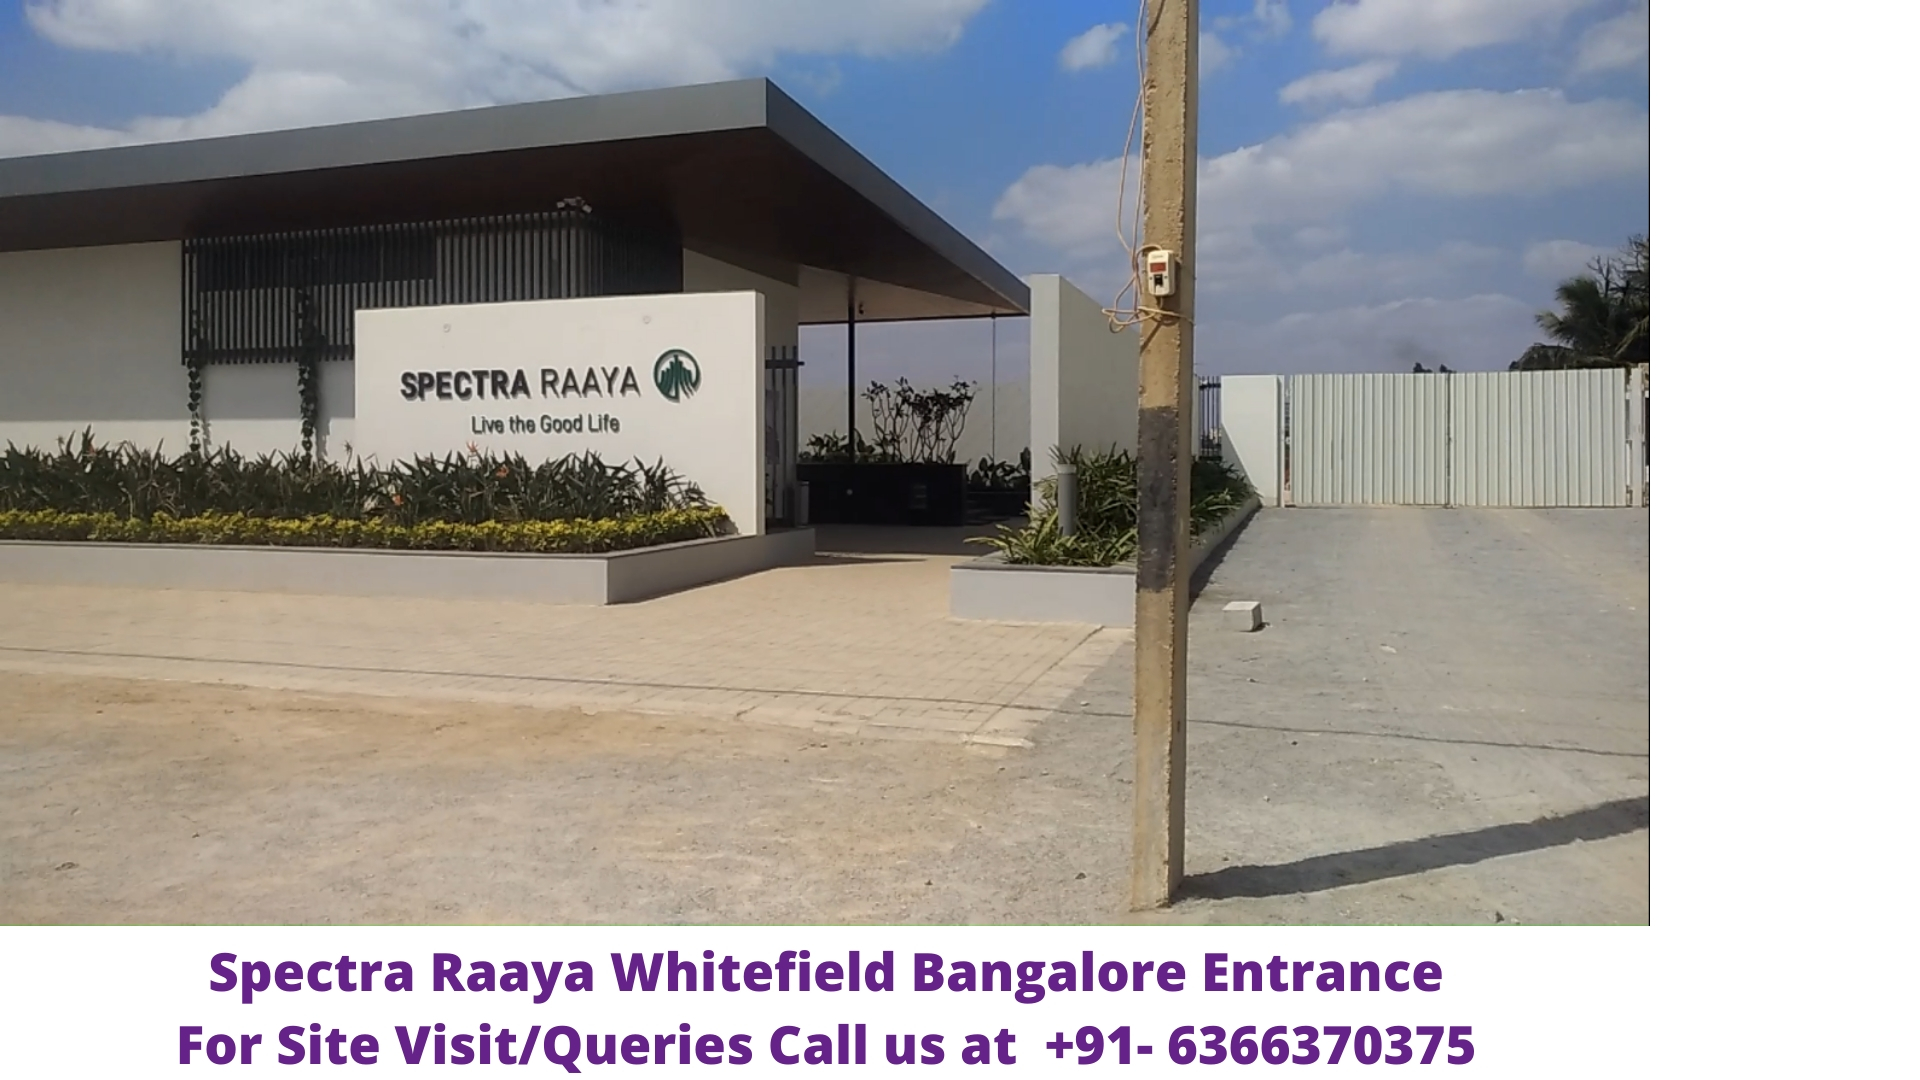 Spectra Raaya Whitefield Bangalore Entrance